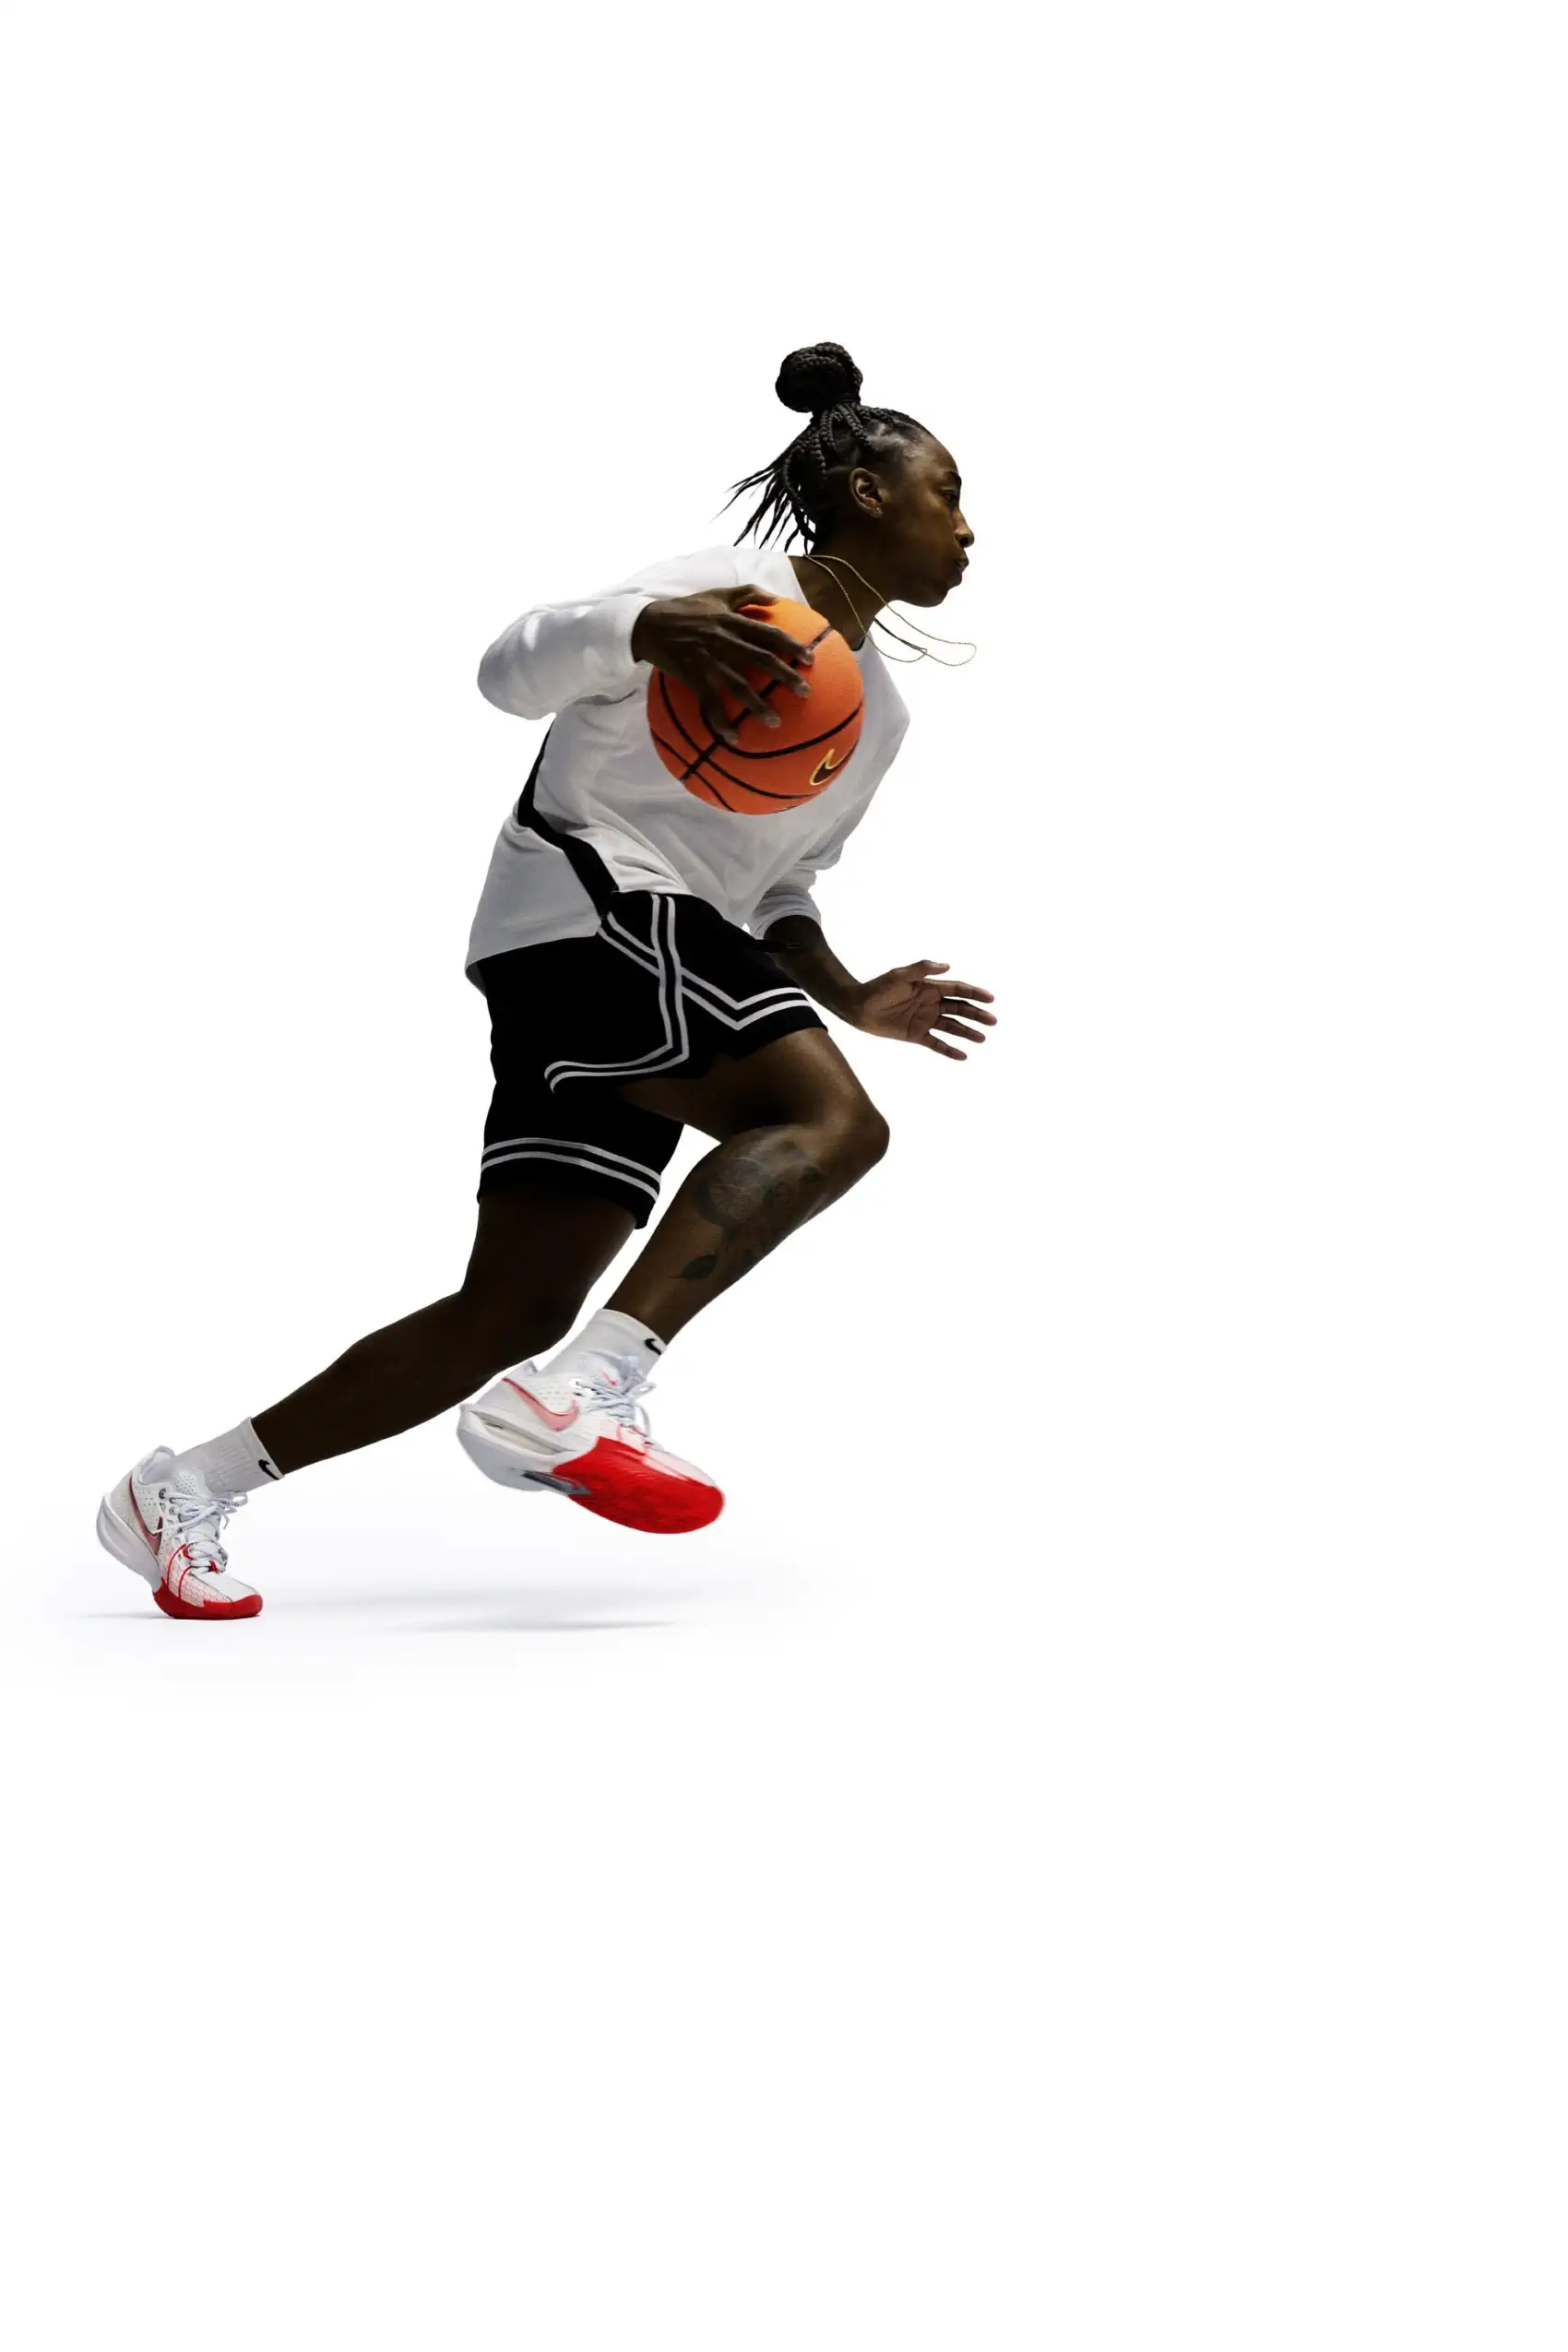 Nike G.T. Cut 3 révolutionne la chaussure de basket-ball avec un design innovant